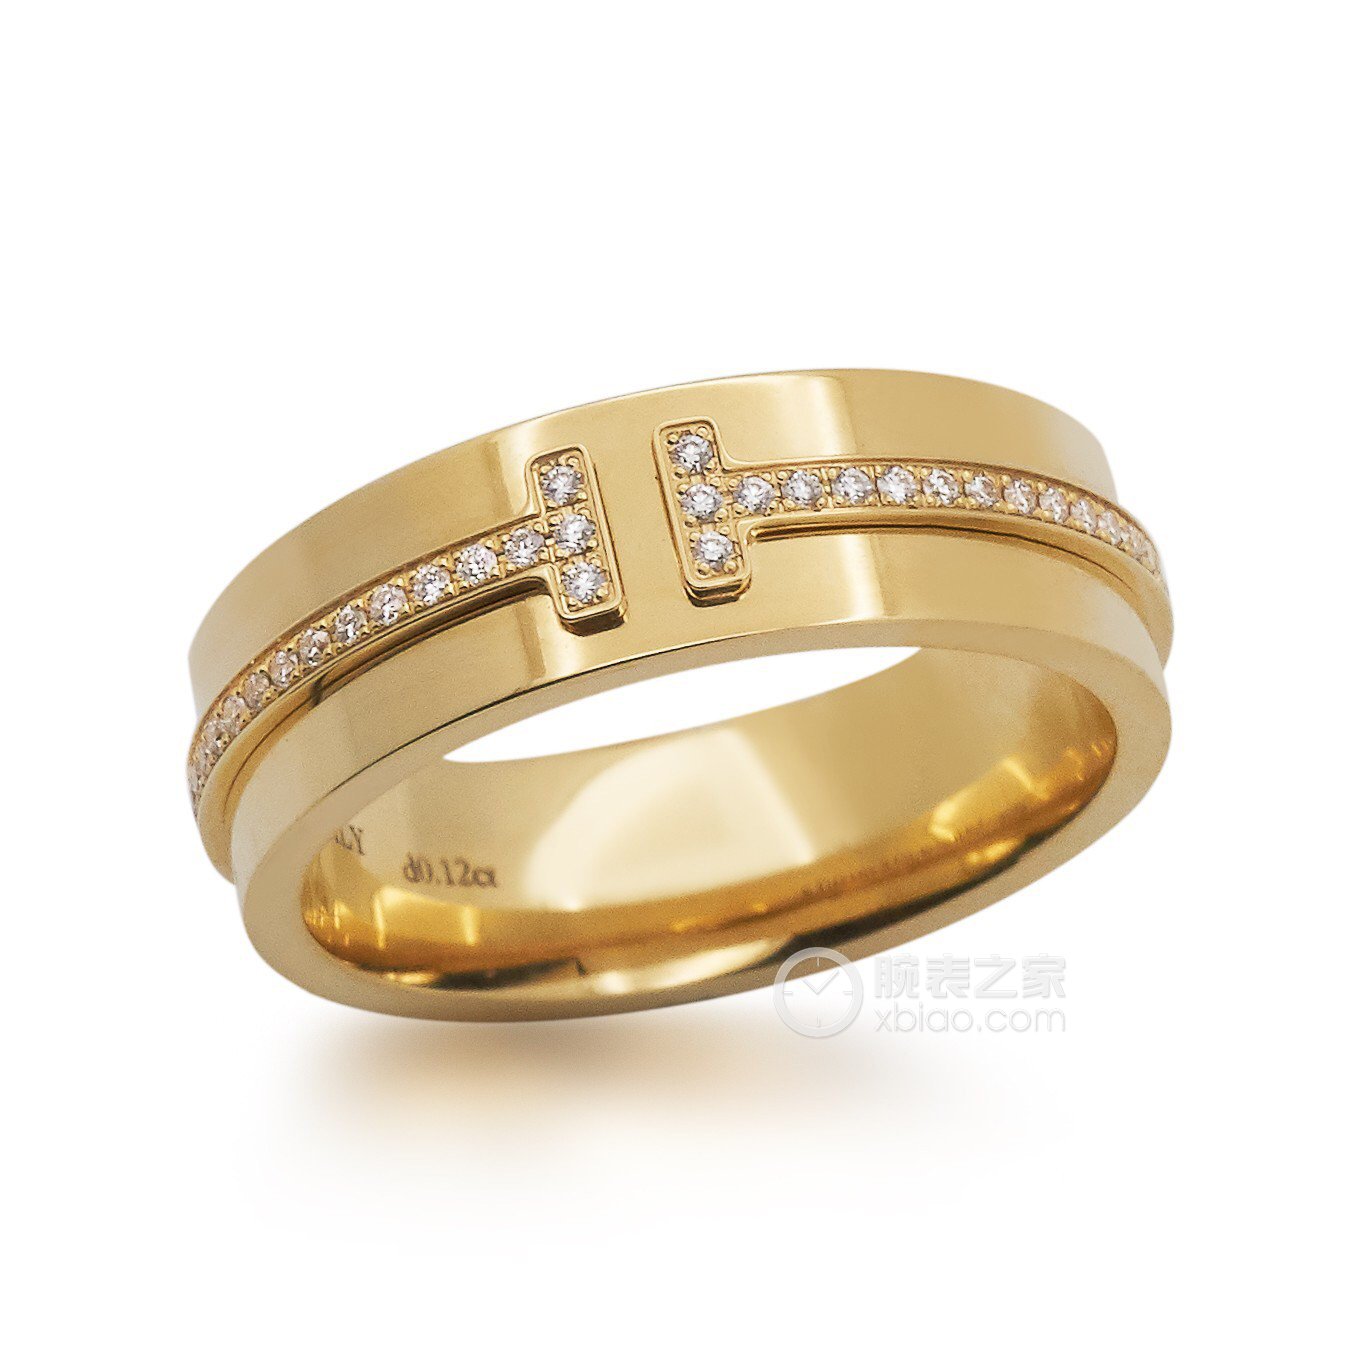 高清图|蒂芙尼铂金镶嵌黄钻戒指戒指图片1|腕表之家-珠宝